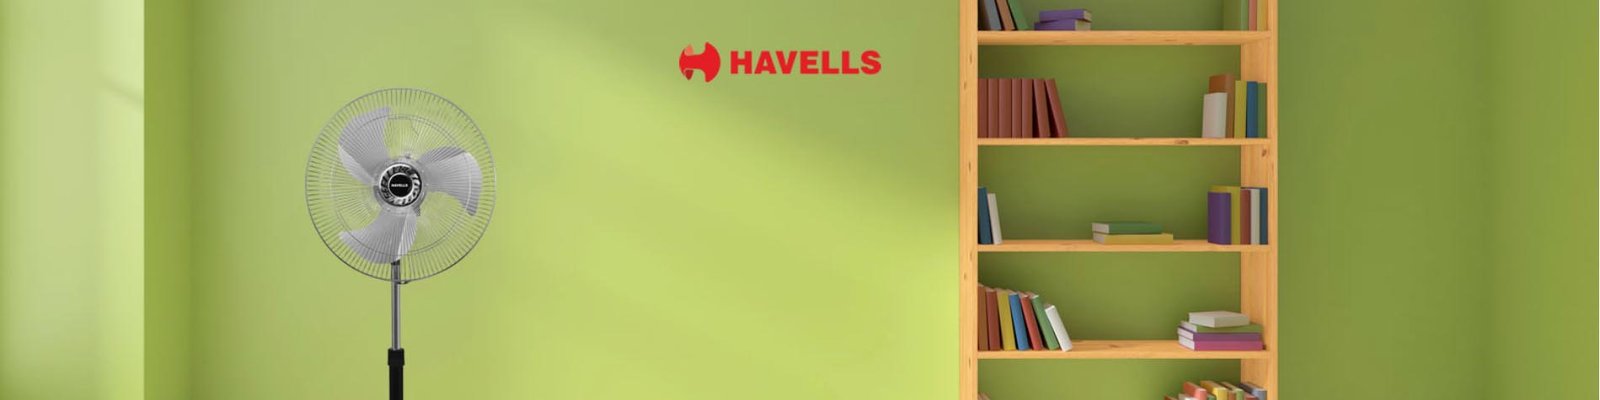 Havells-pedestal-fan-banner-2